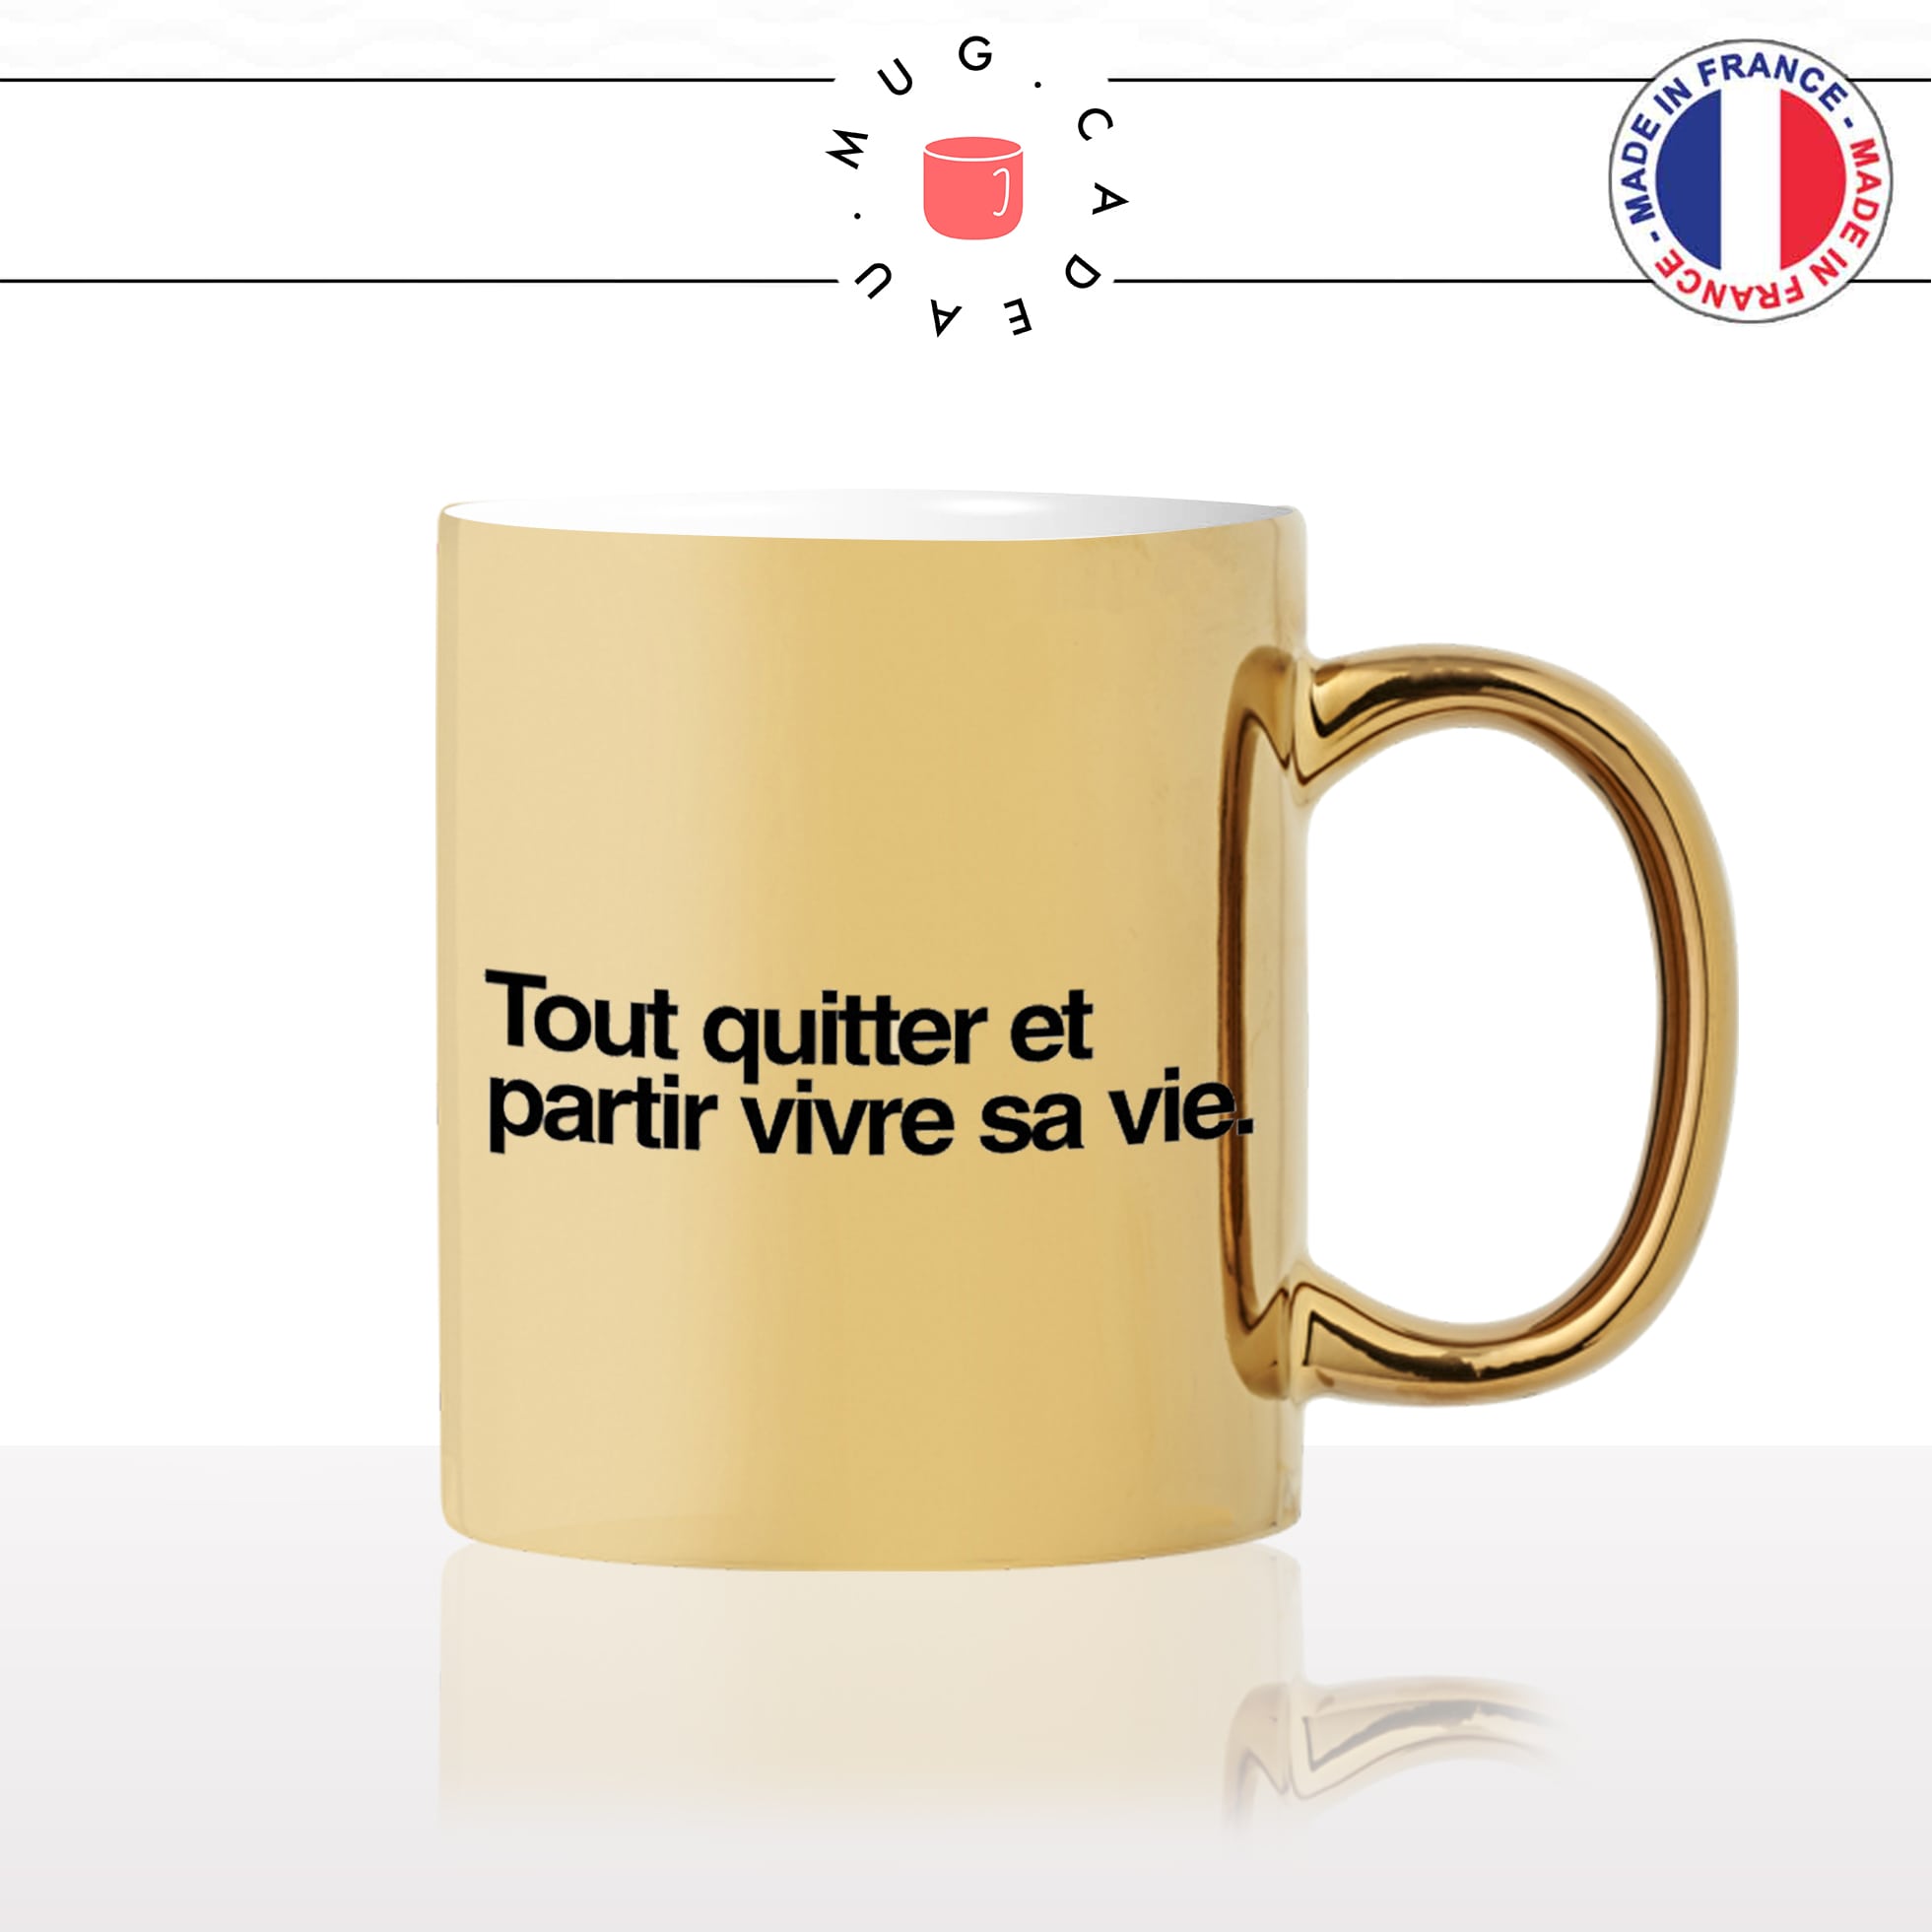 mug-tasse-doré-or-gold-tout-quitter-partir-vivre-sa-vie-citation-phrase-dicton-humour-fun-idée-cadeau-personnalisé-café-thé2-min